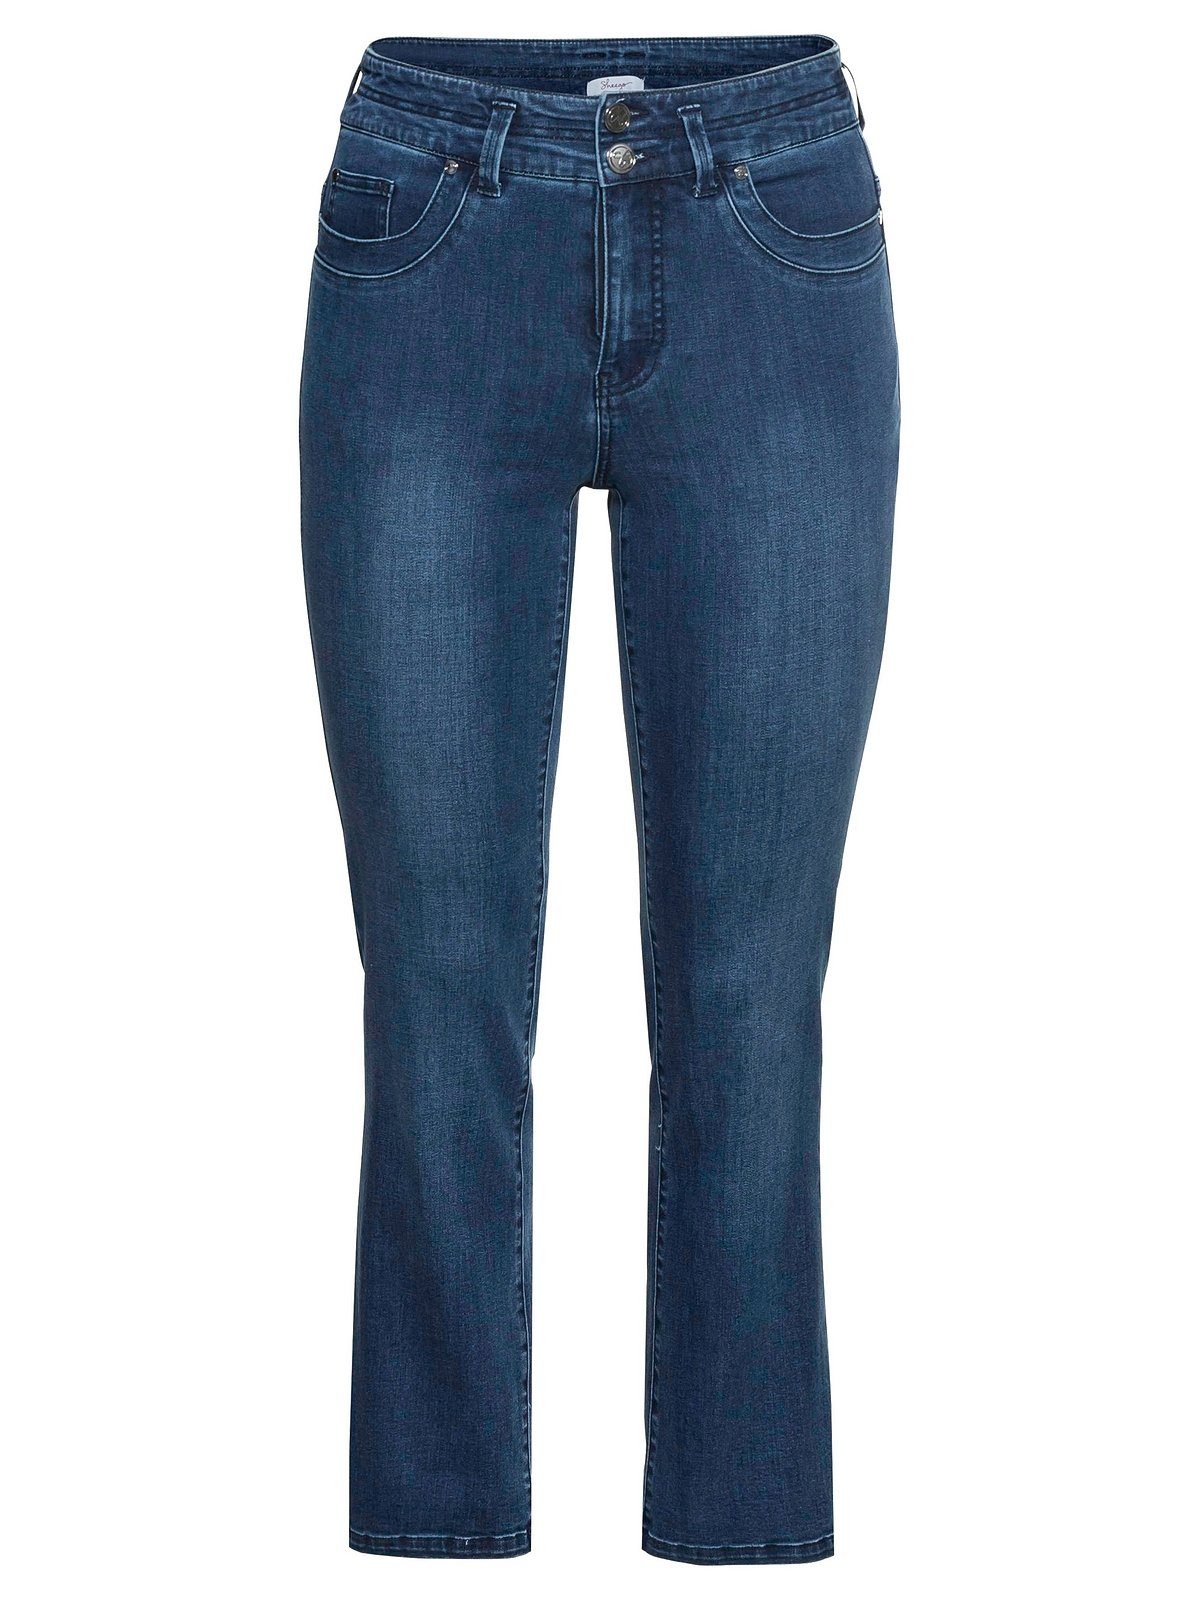 Sheego Gerade Jeans Große Größen Taille MANUELA schmale Oberschenkel kräftige für und eine